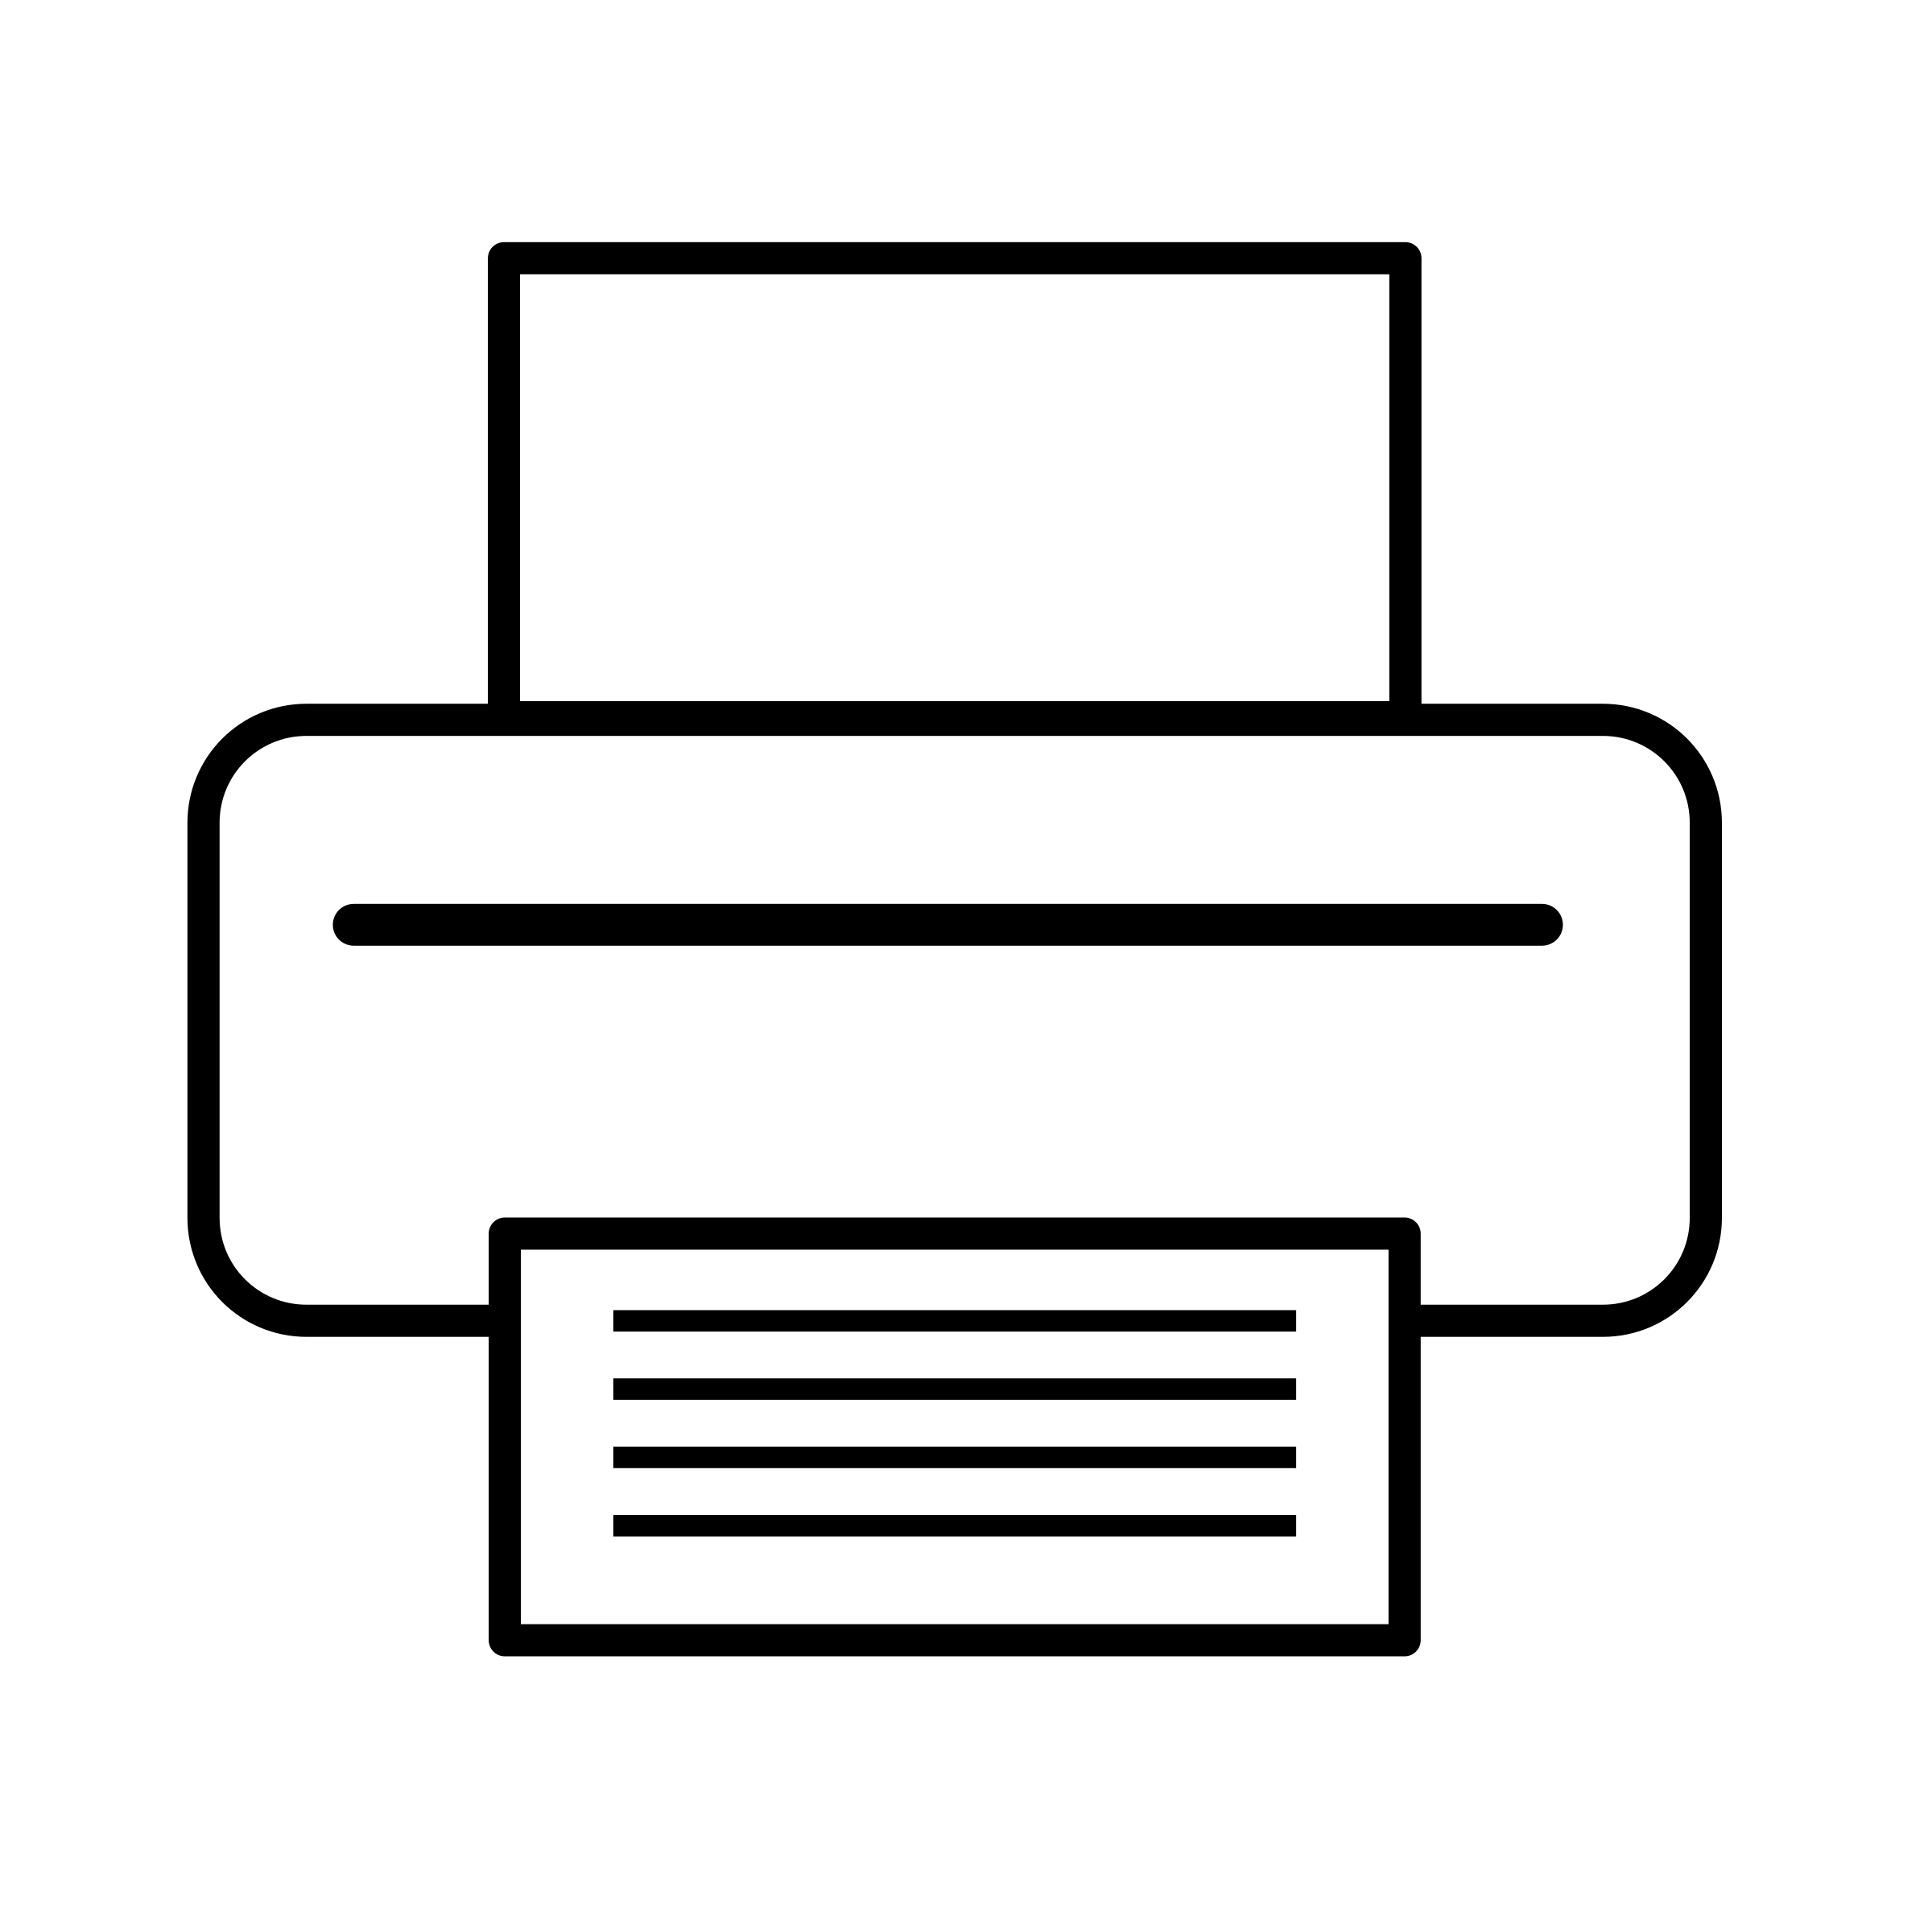 Clipart - Printer icon